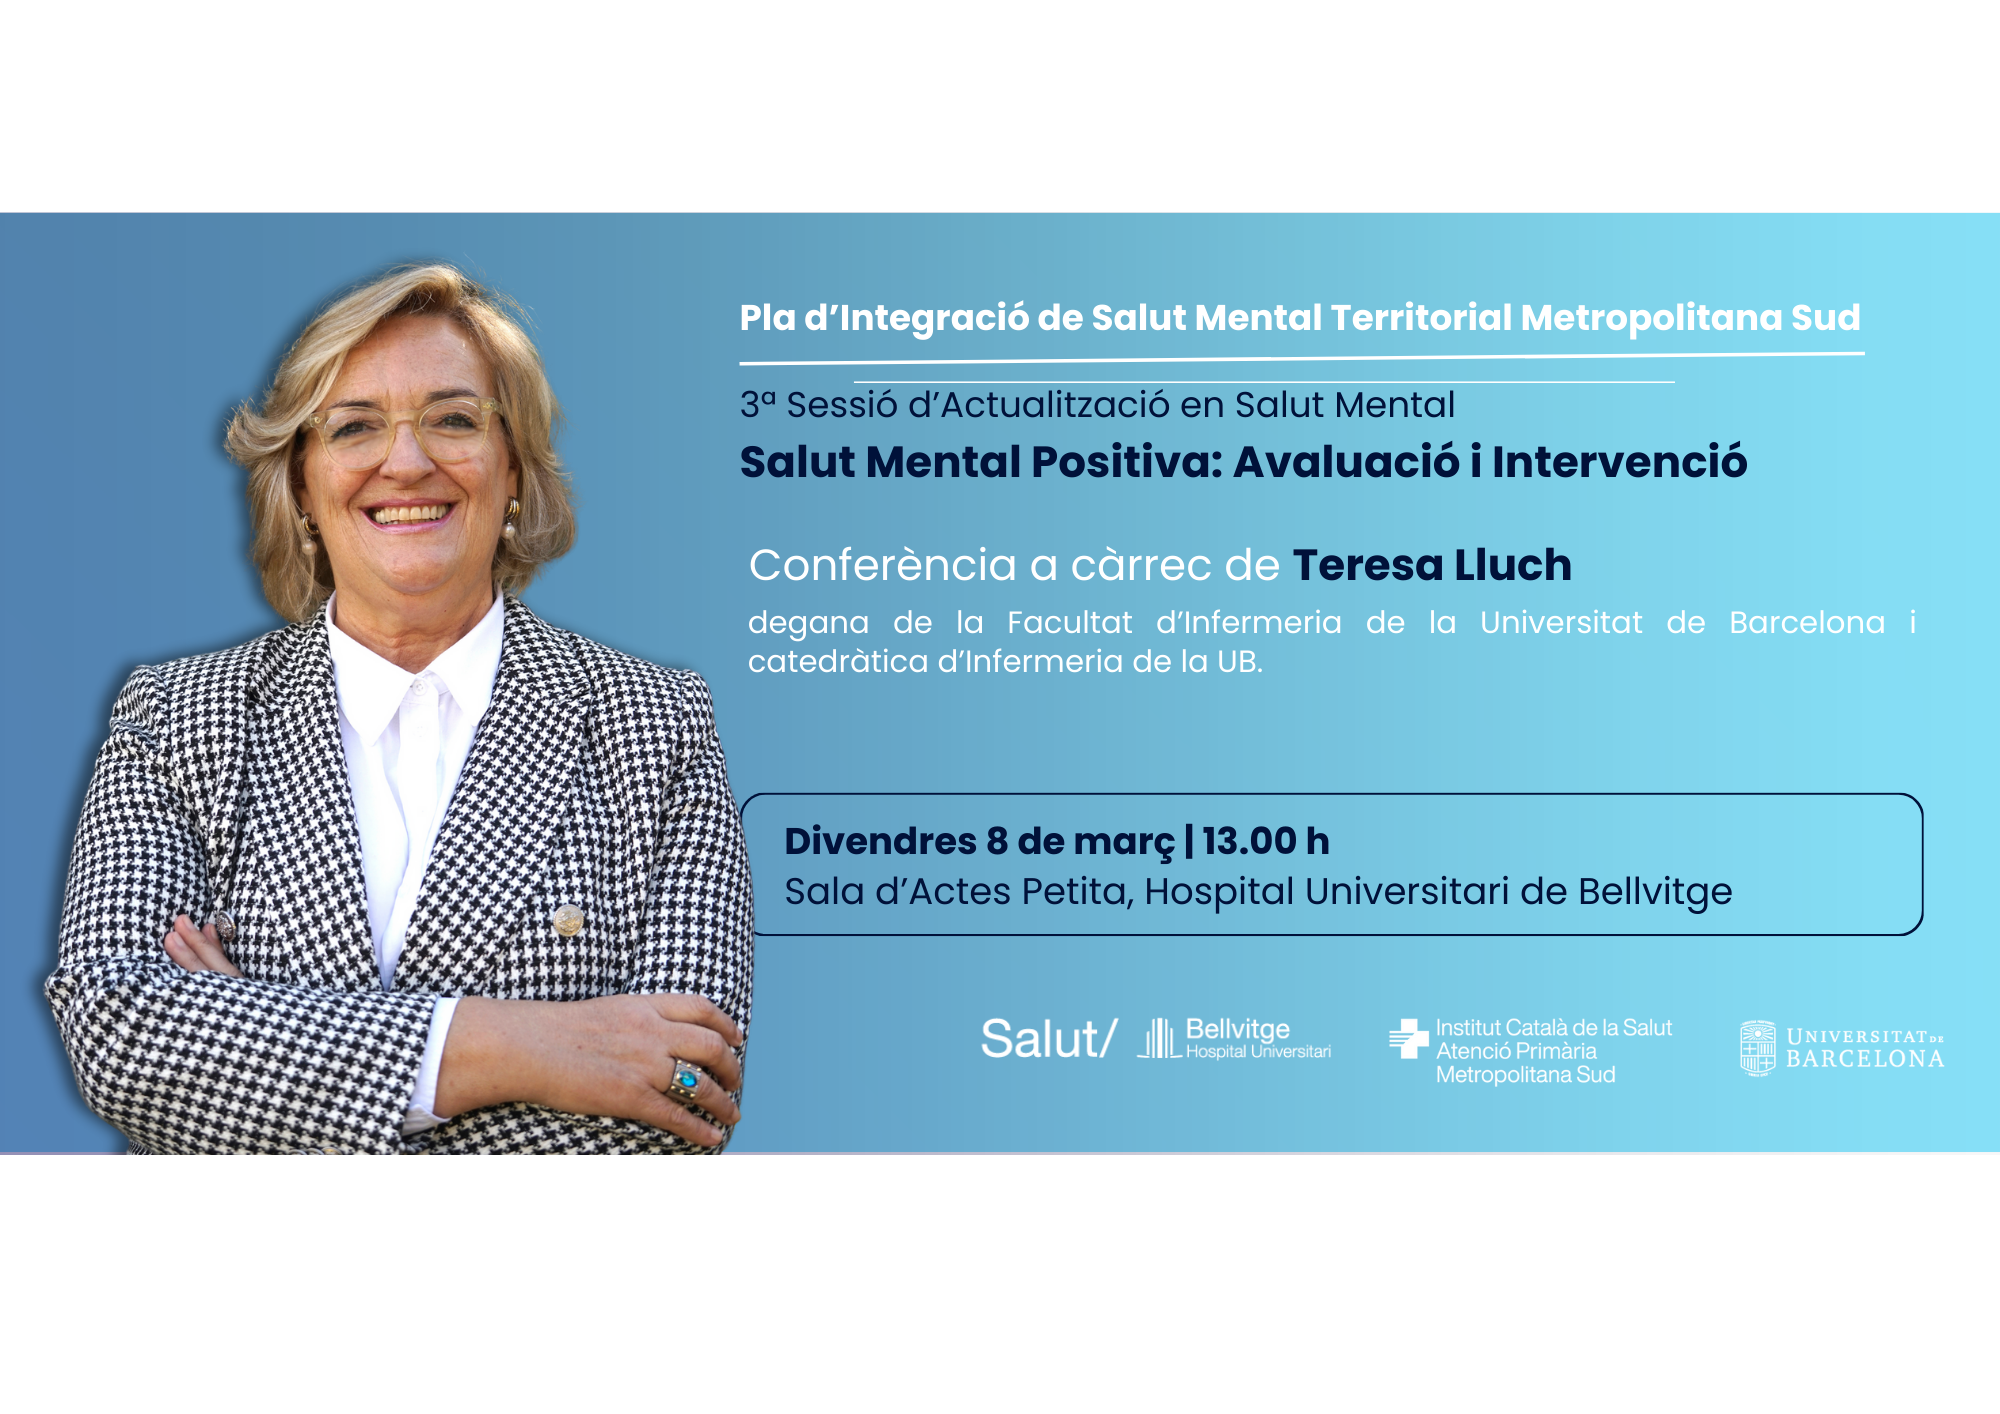 El próximo 8 de marzo se celebrará la  3ª Sesión de Actualización en Salud Mental